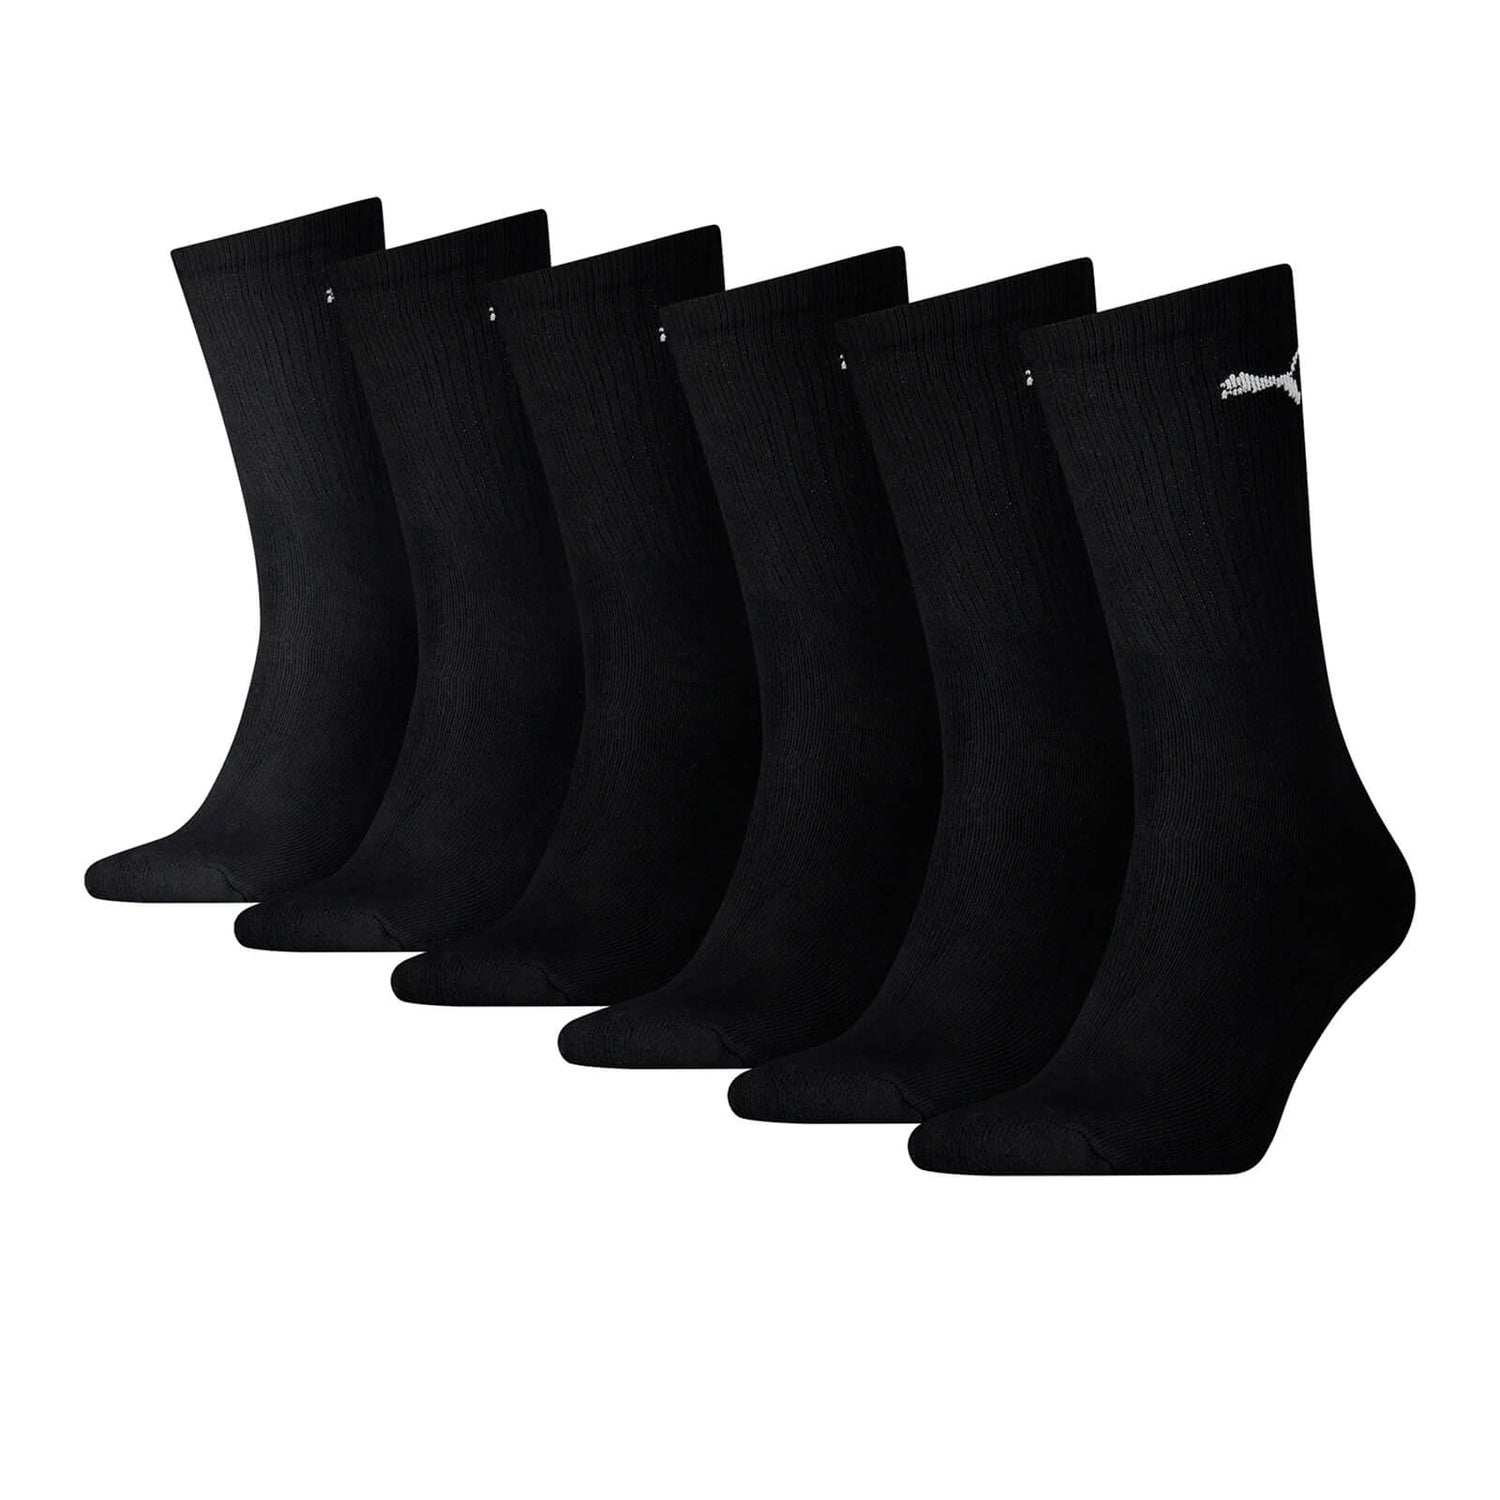 Pack de 6 calcetines Puma - Hombre - Negro Mens Clothing